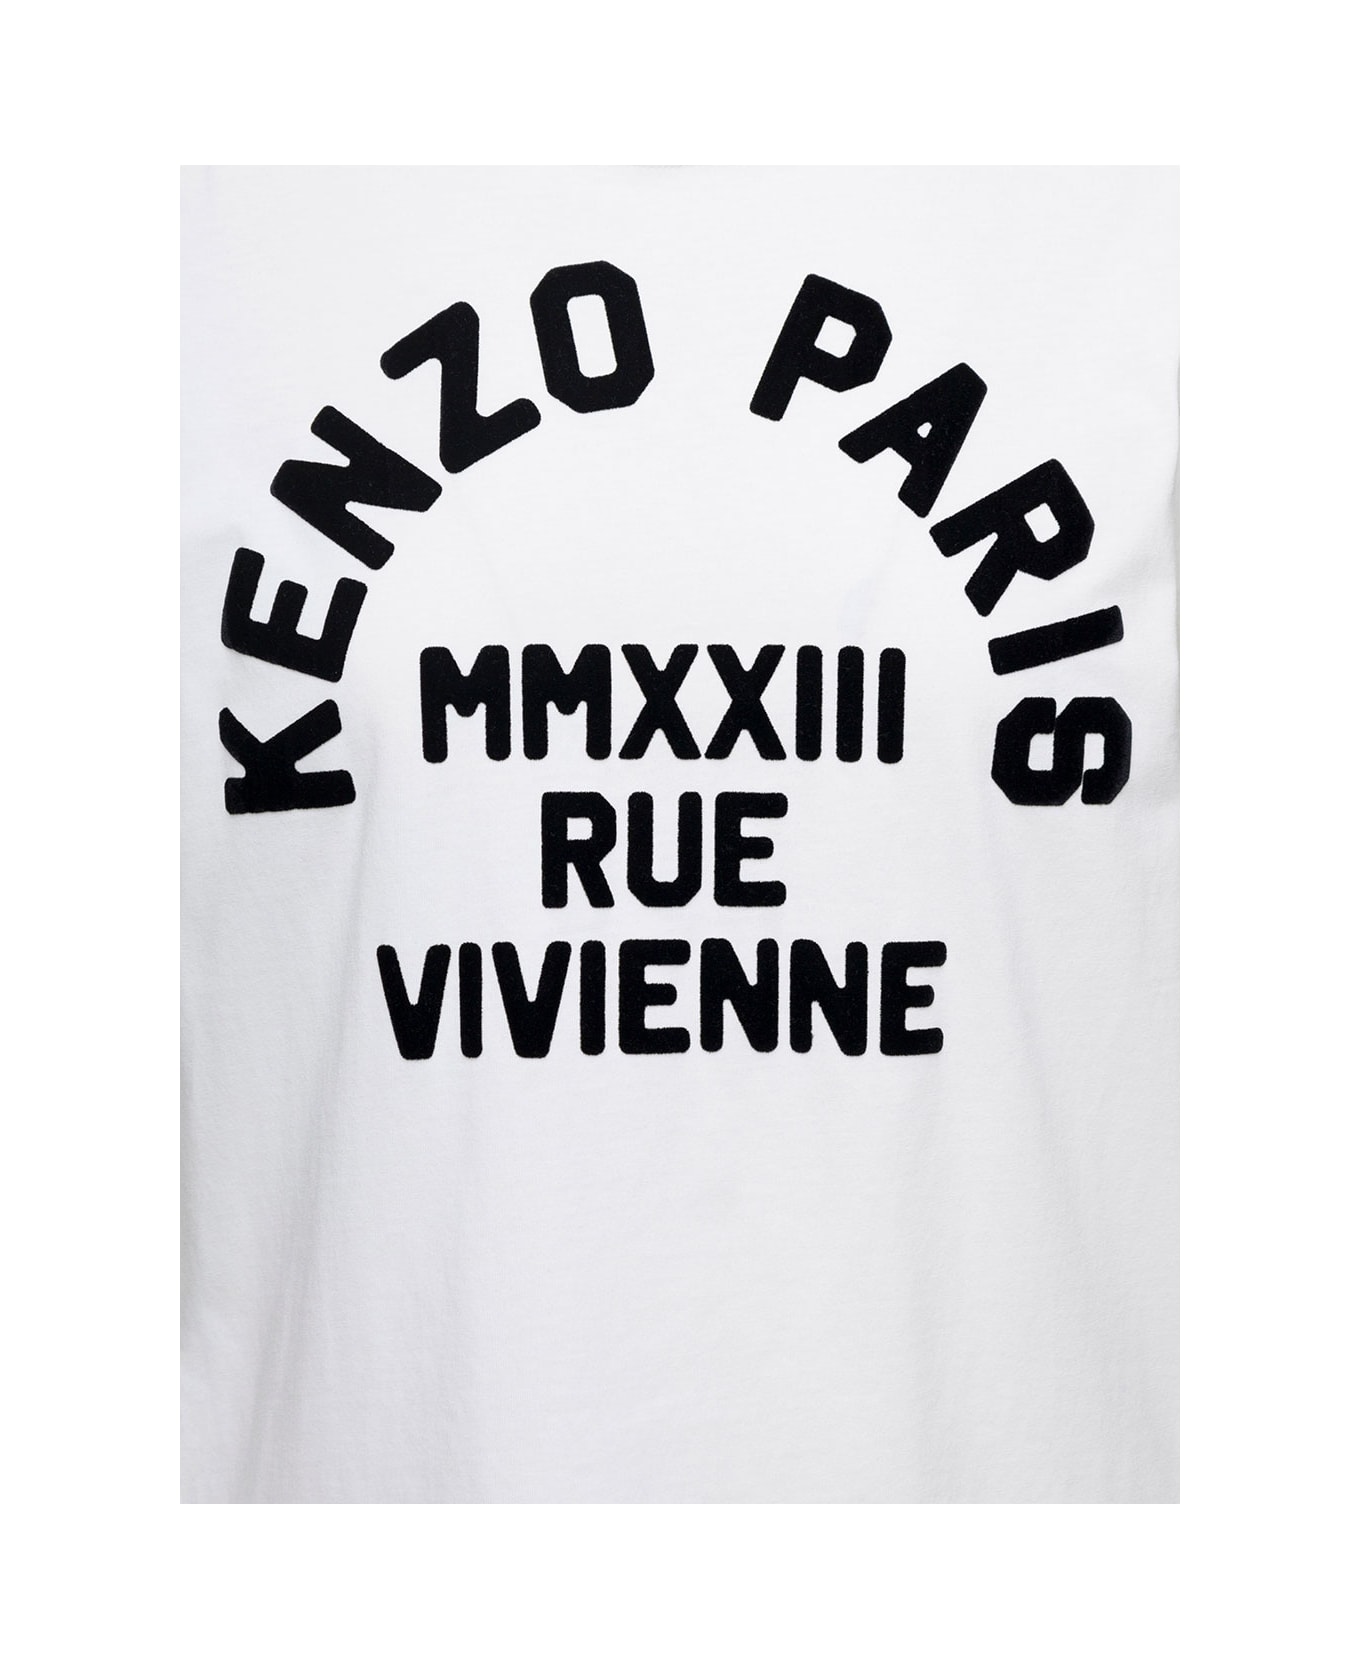 Kenzo White Crew Neck T-shirt With Logo Print In Cotton Woman - White